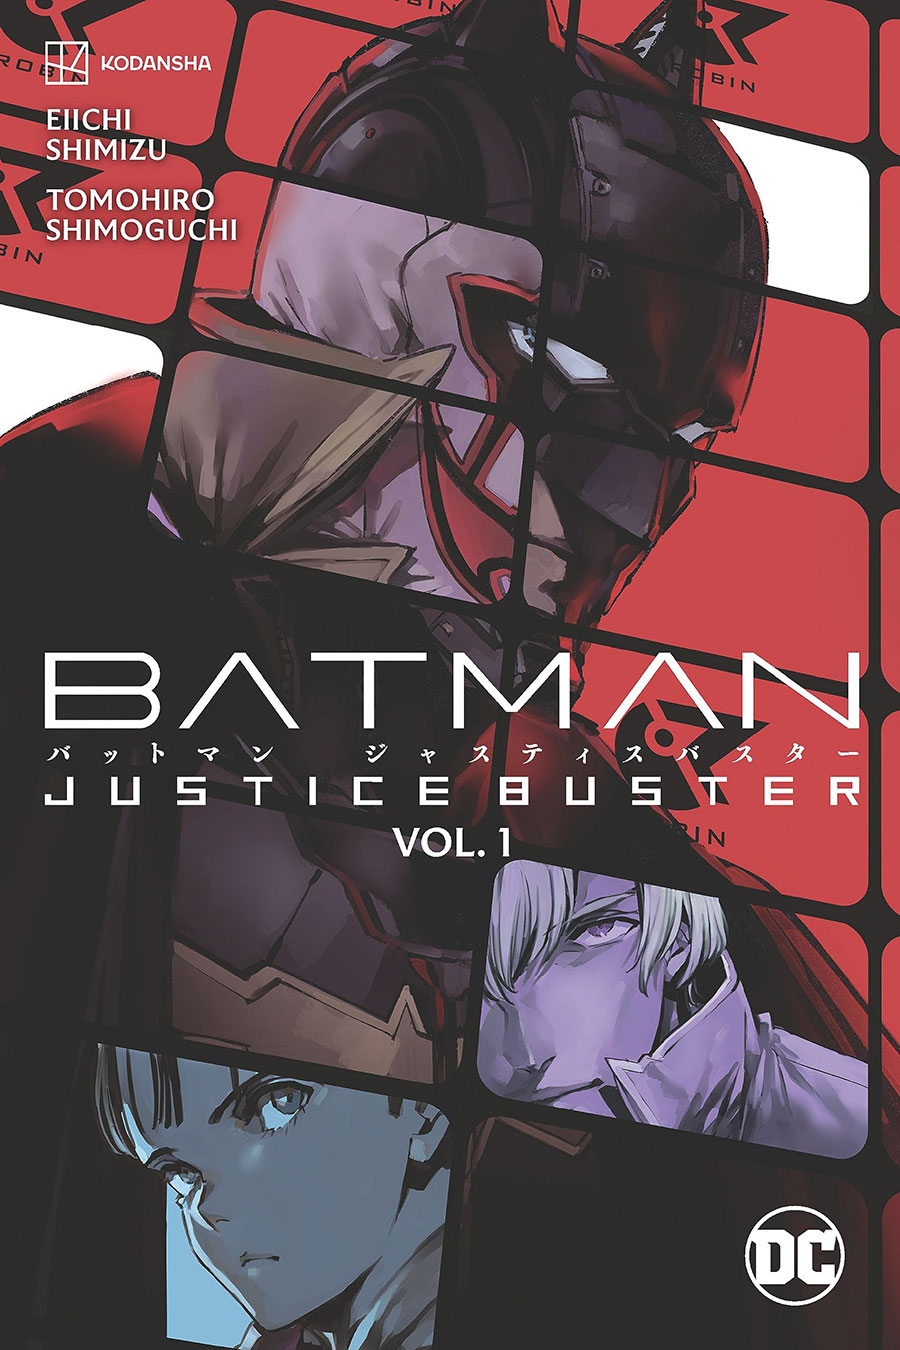 Batman Justice Buster Vol 1 TP